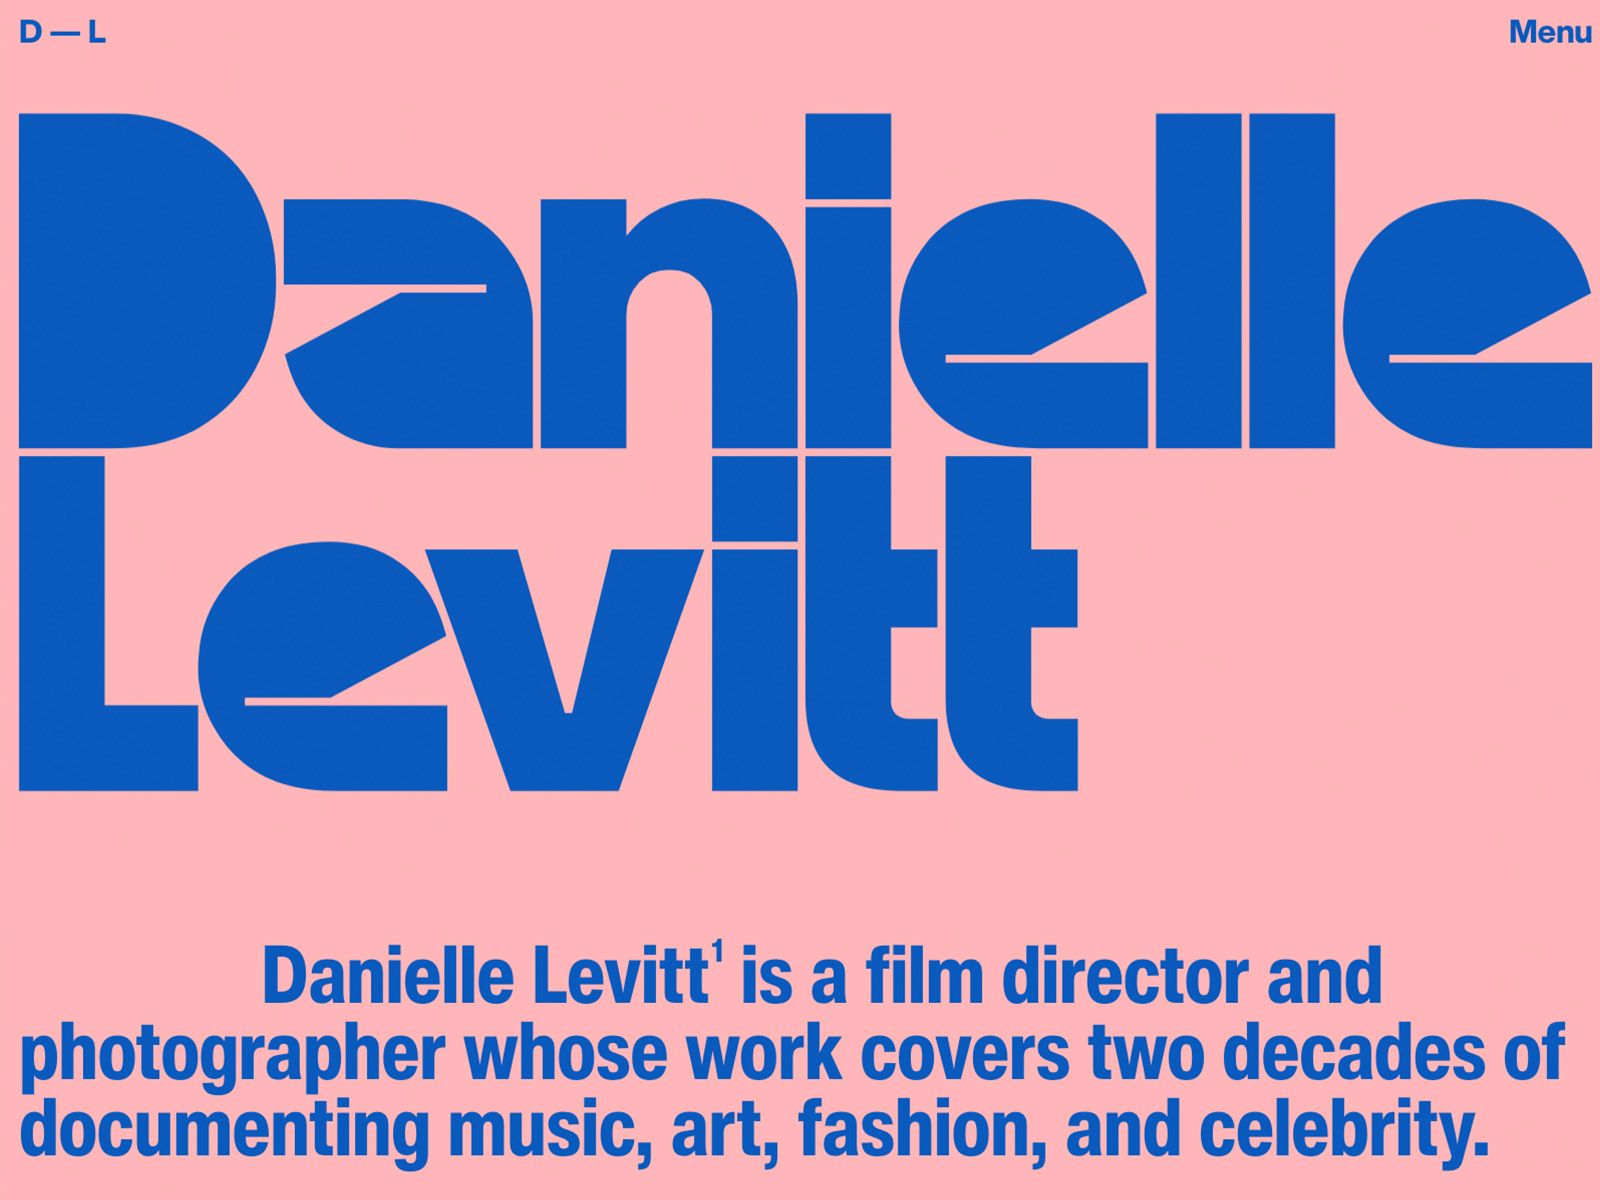 Danielle Levitt